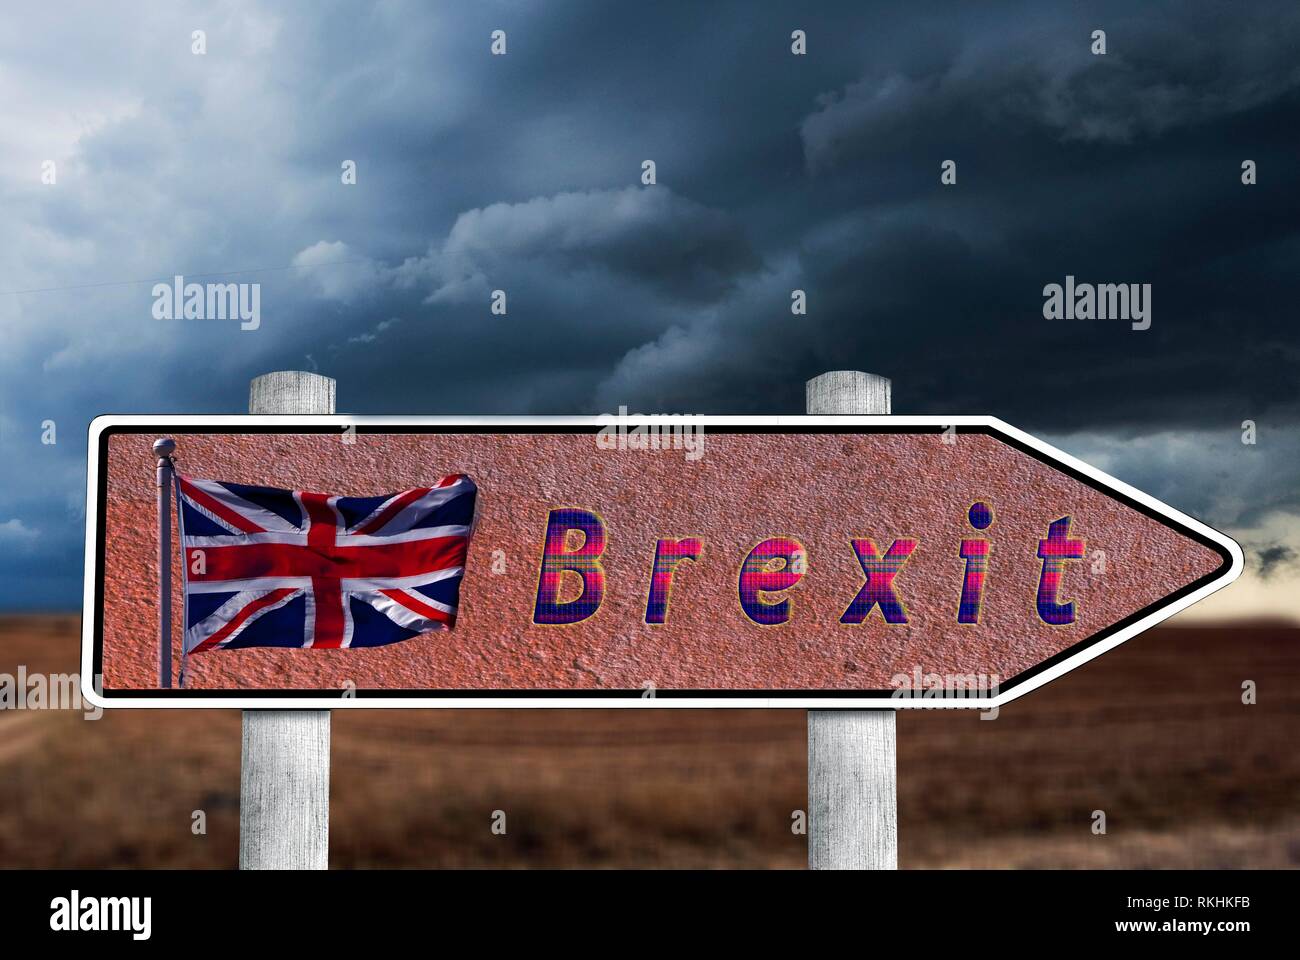 Panneau avec drapeau britannique et le lettrage Brexit, menaçant, l'humeur orageuse, image symbolique de quitter l'UNION EUROPÉENNE, Grande-Bretagne Banque D'Images